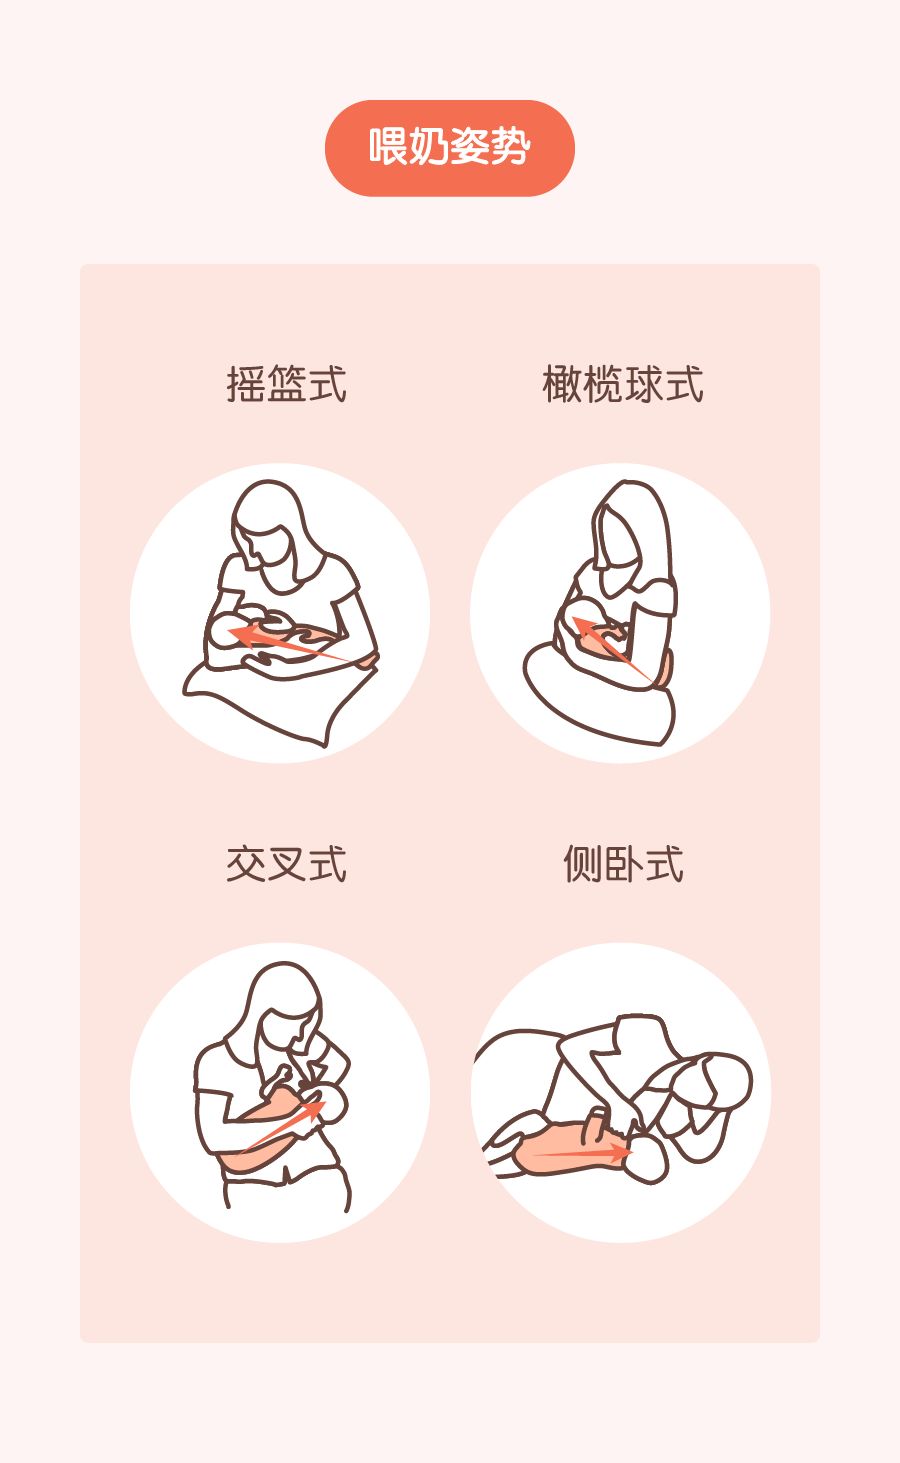 ▼正确的喂奶姿势参考所以在喂奶,一定要让宝宝含住妈妈的整个乳晕和